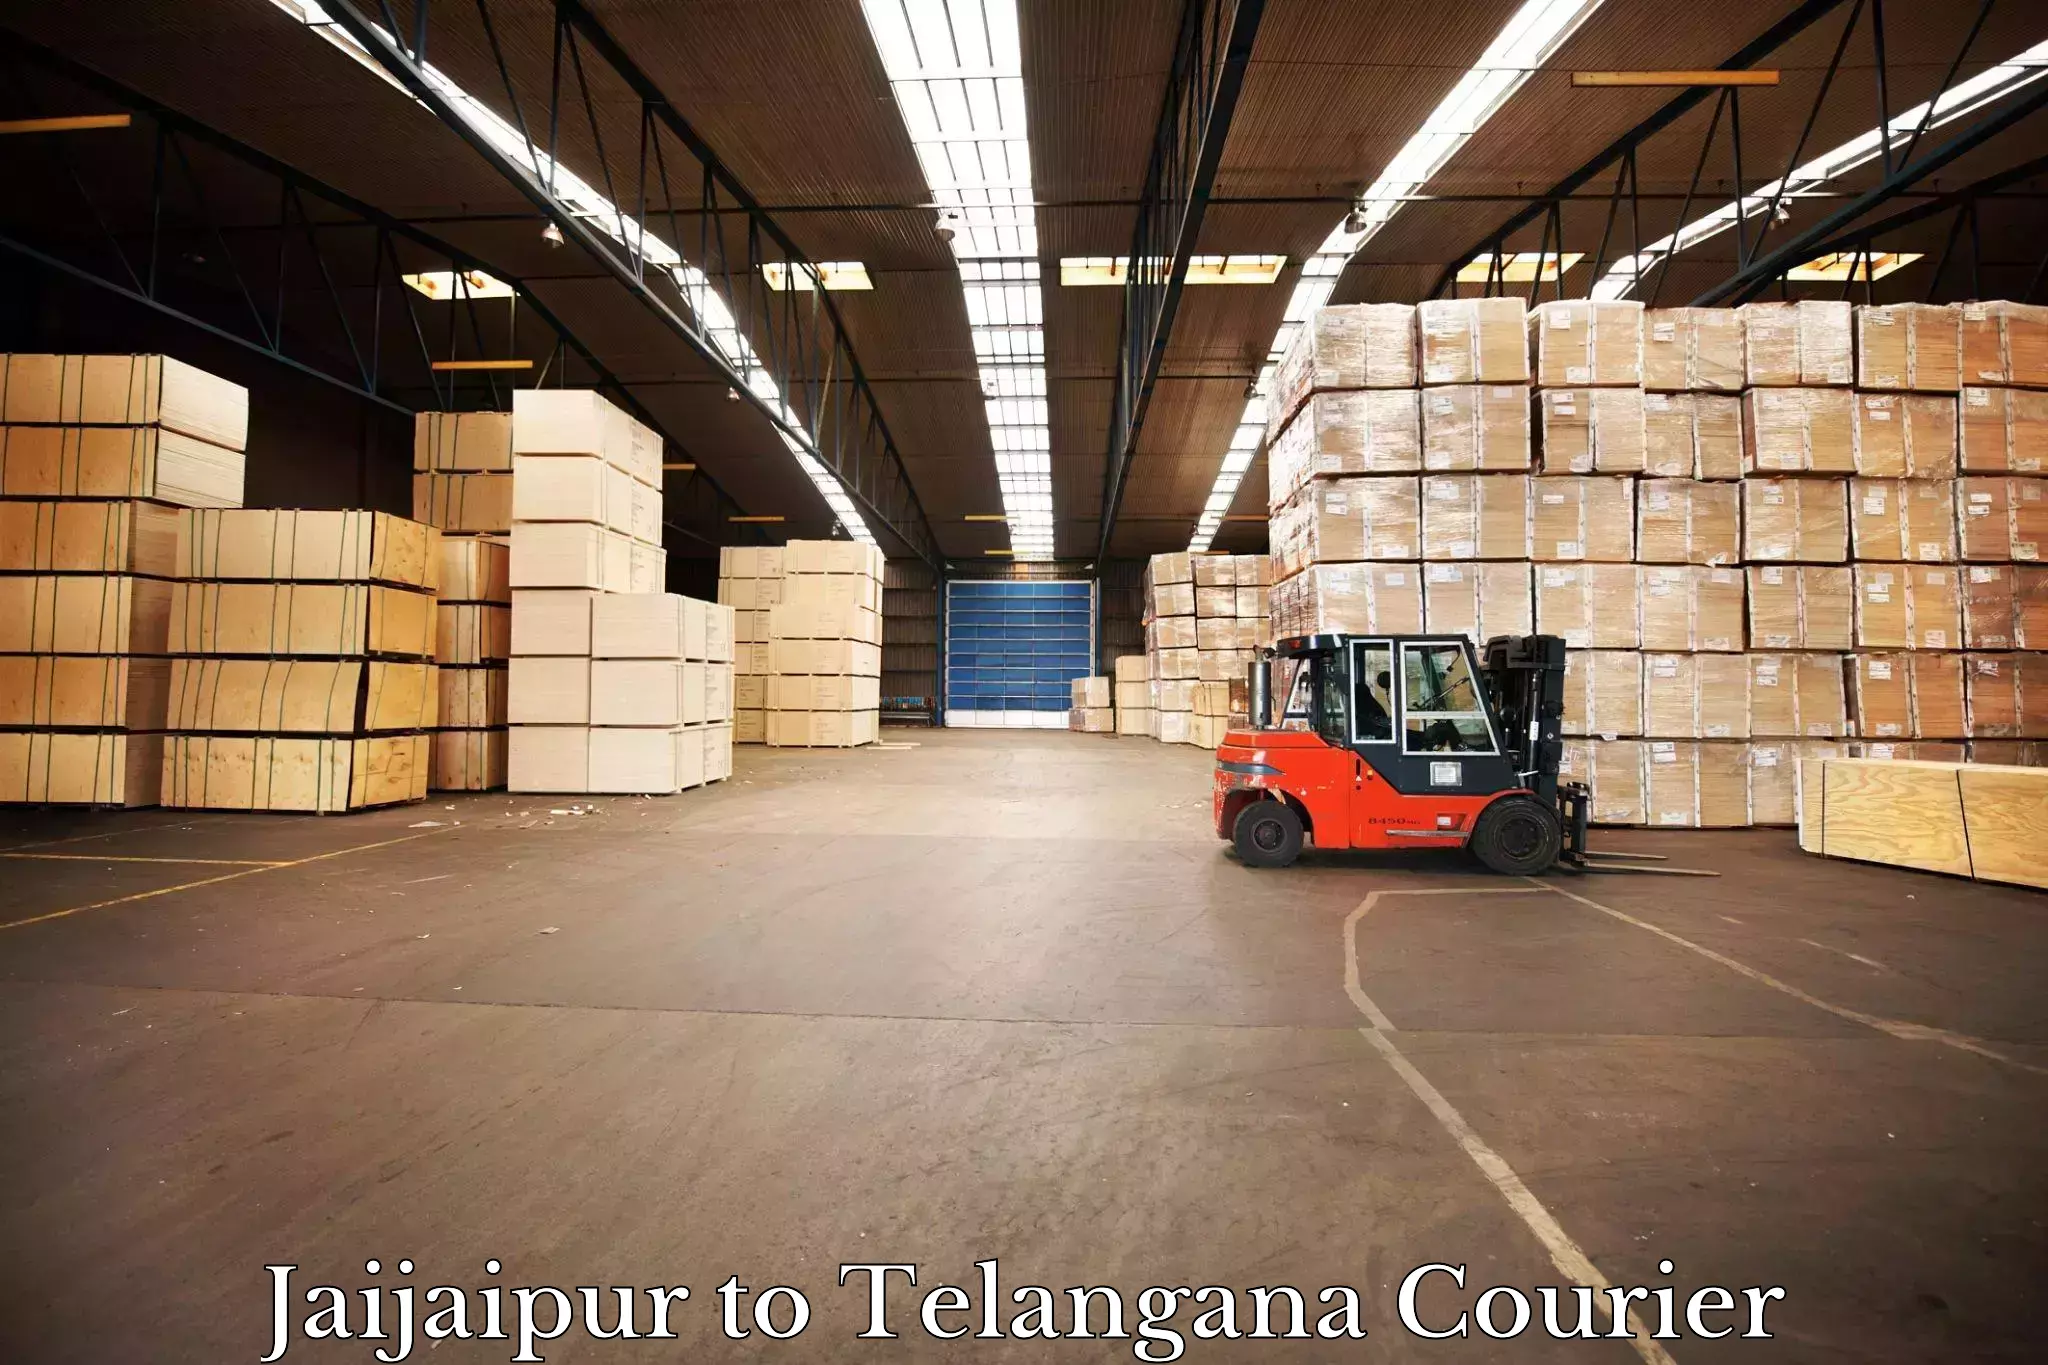 Seamless shipping service Jaijaipur to Eligedu